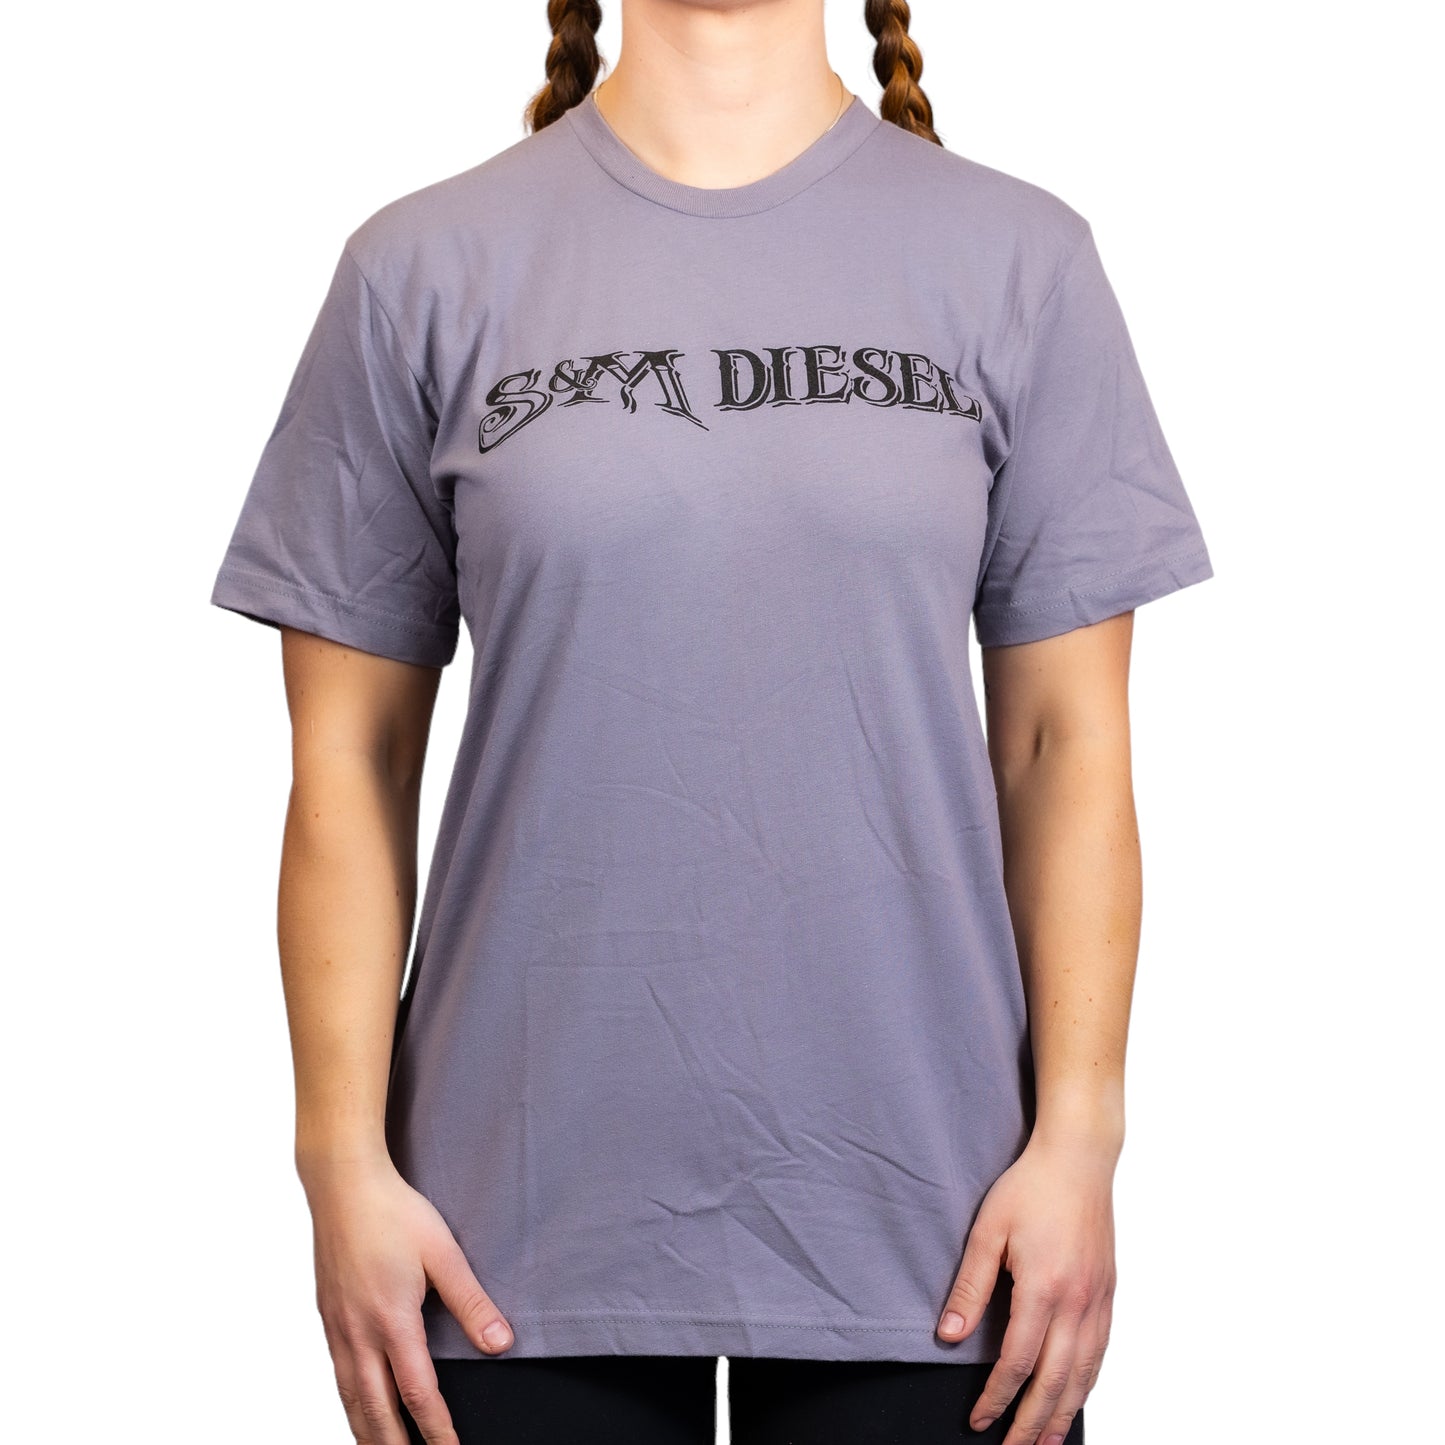 S&M Diesel short sleeve uni-sex t-shirt, Black logo - 10 color options avail